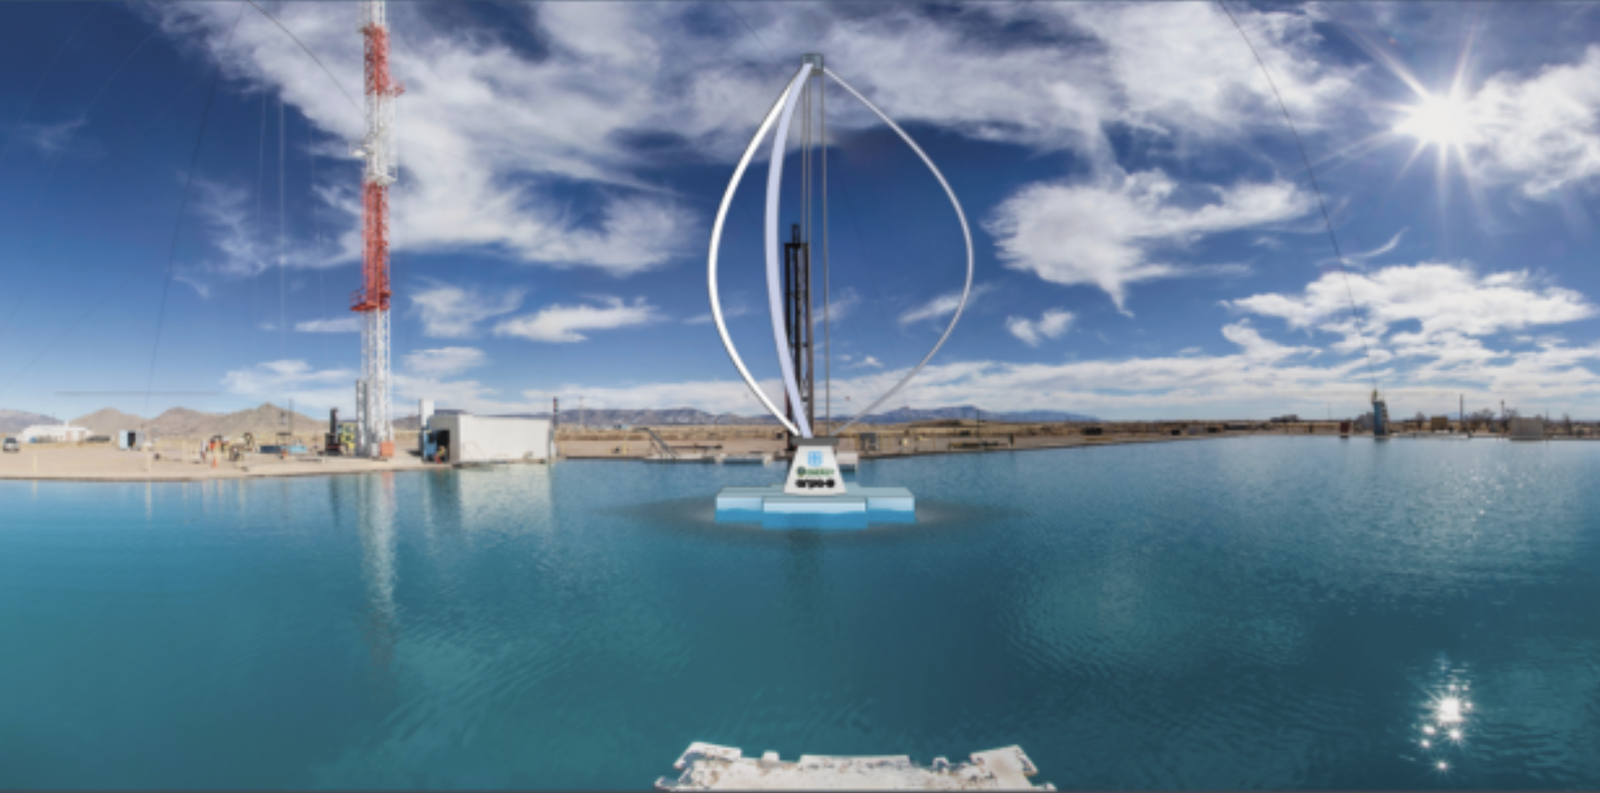 Sofort schwimmende Offshore-Windkraftanlage: Einfach den Turm entfernen